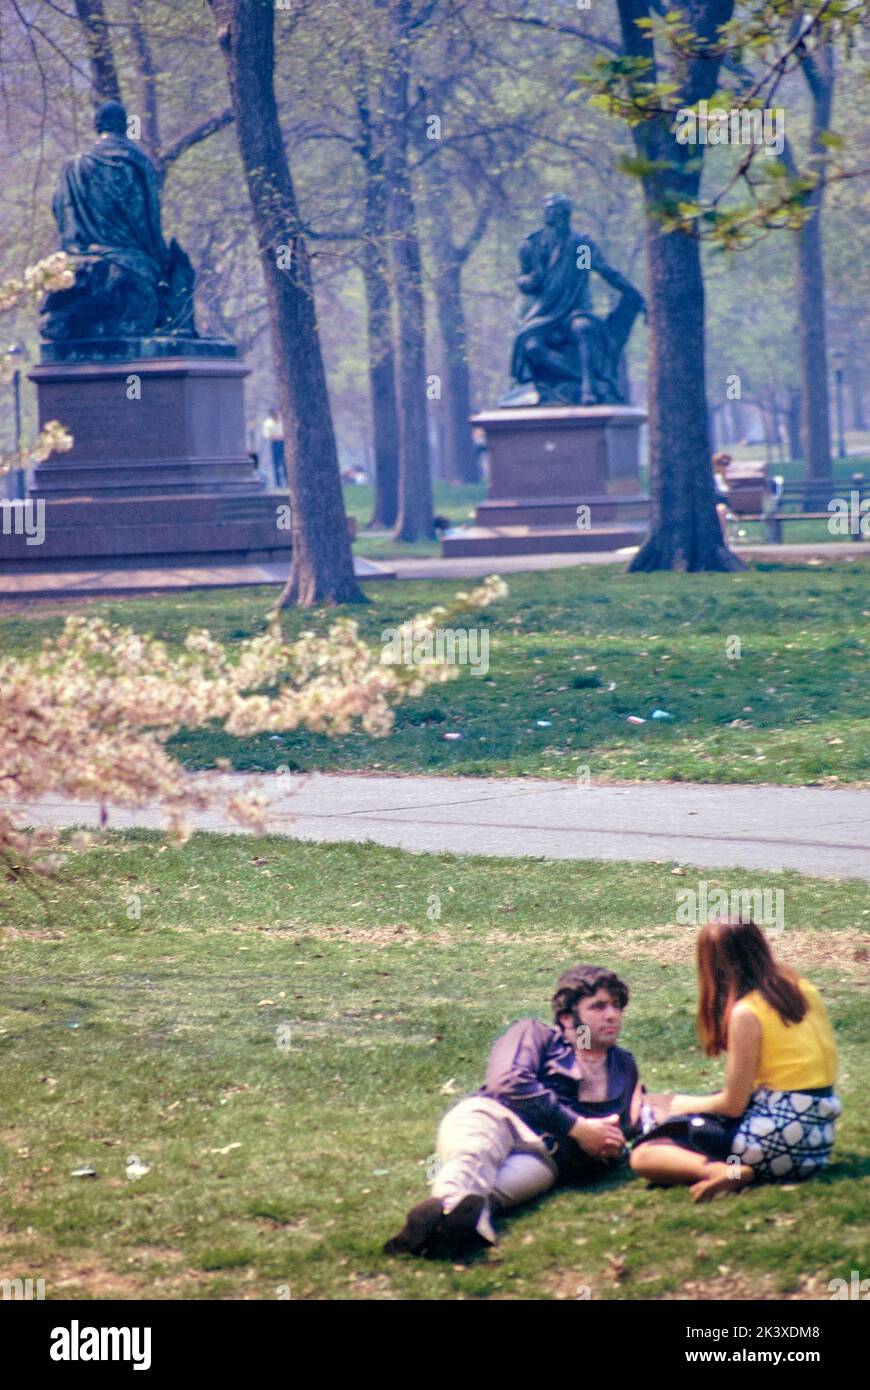 Coppia che si rilassa su Lawn, Central, Park, New York City, New York, USA, toni Frissell Collection, maggio 1970 Foto Stock